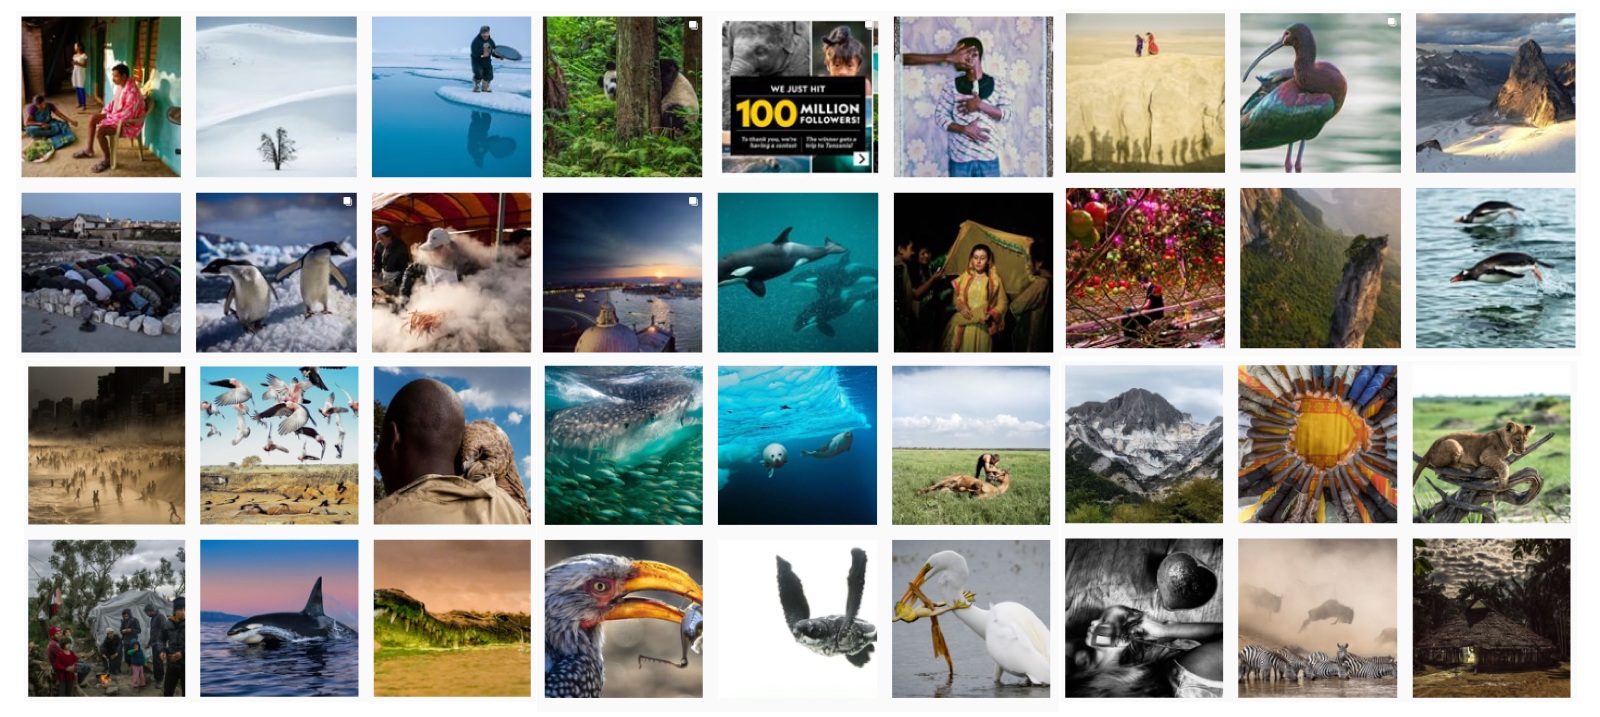 Le National Geographic a fêté ses 100 millions de followers avec un grand concours photo. © National Geographic, Instagram